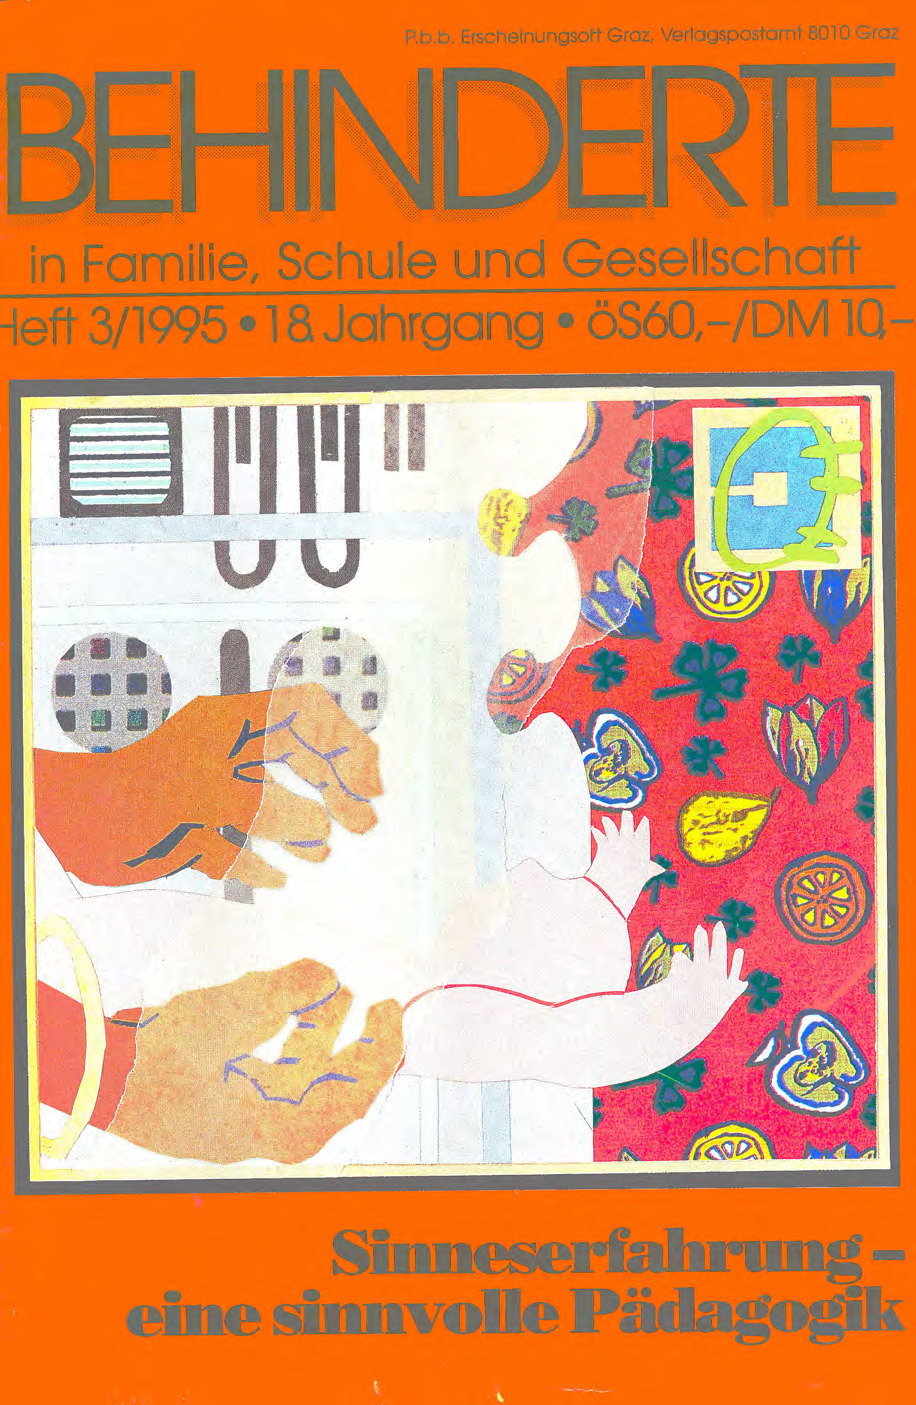 Titelbild der Zeitschrift BEHINDERTE MENSCHEN, Ausgabe 3/1995 "Sinneserfahrung – eine sinnvolle Pädagogik"